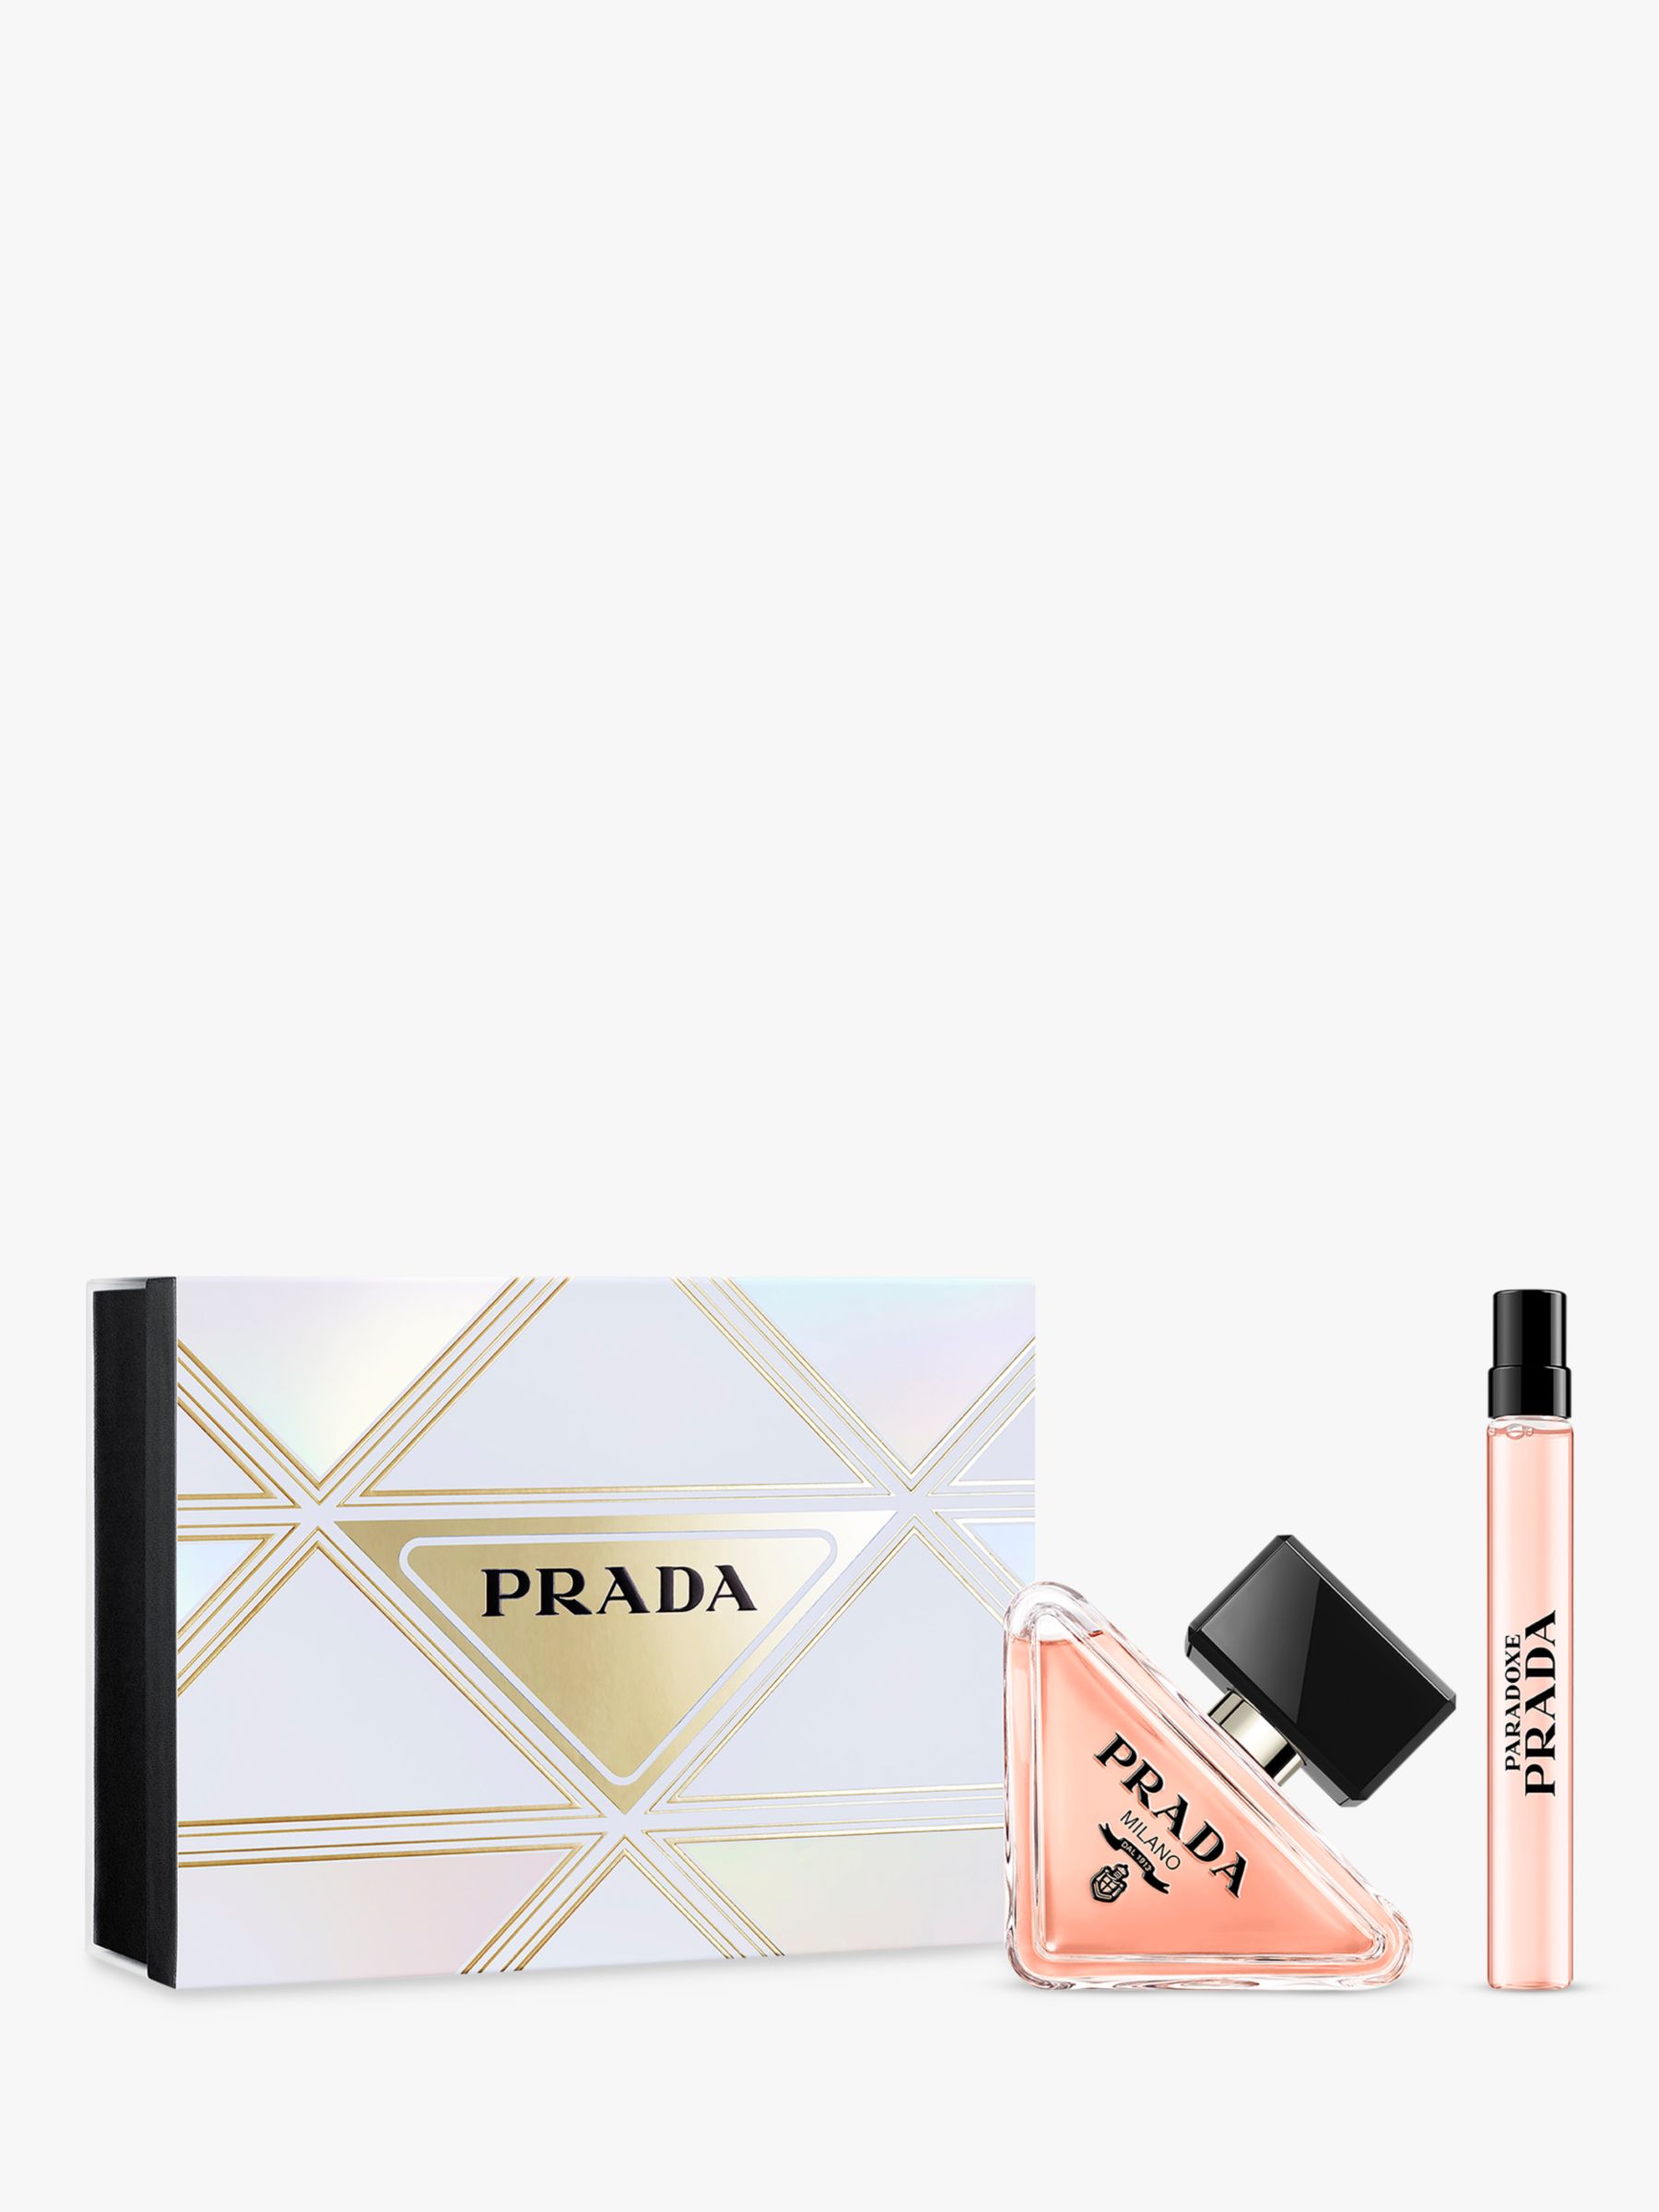 Prada Paradoxe Eau de Parfum 50ml Fragrance Gift Set